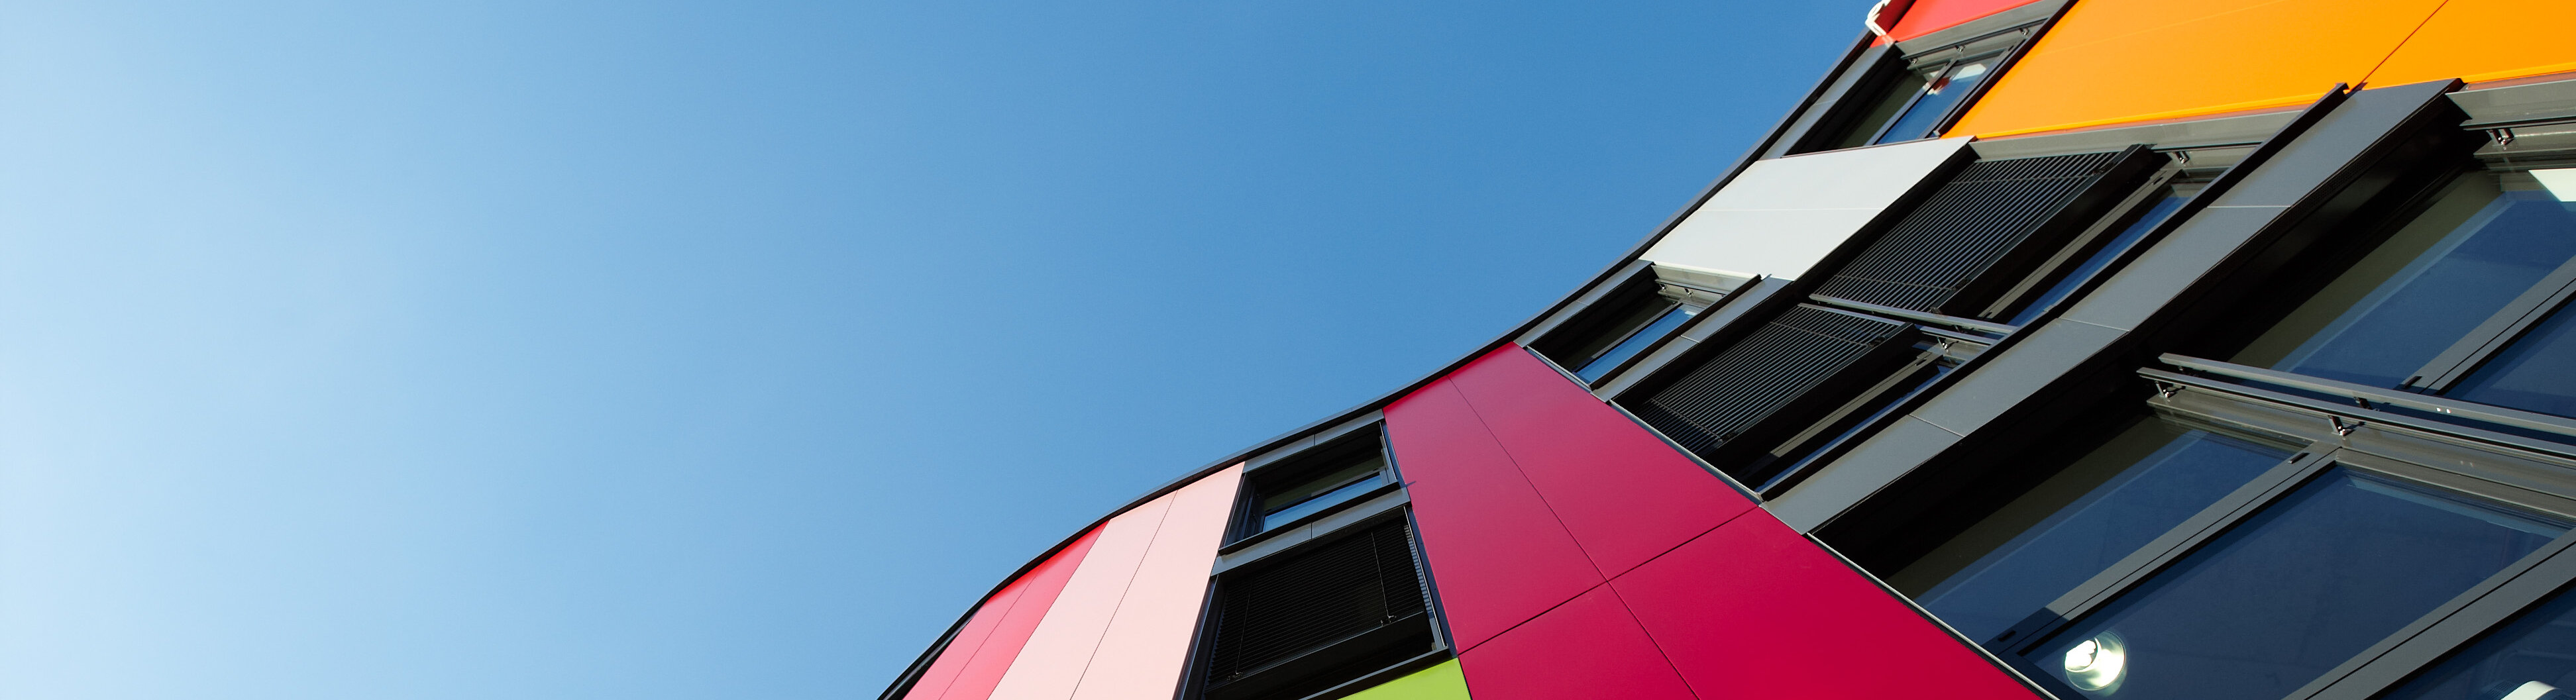 Das bunte Gebäude der Junior Uni aus der Froschperspektive mit klarem, blauen Himmel.